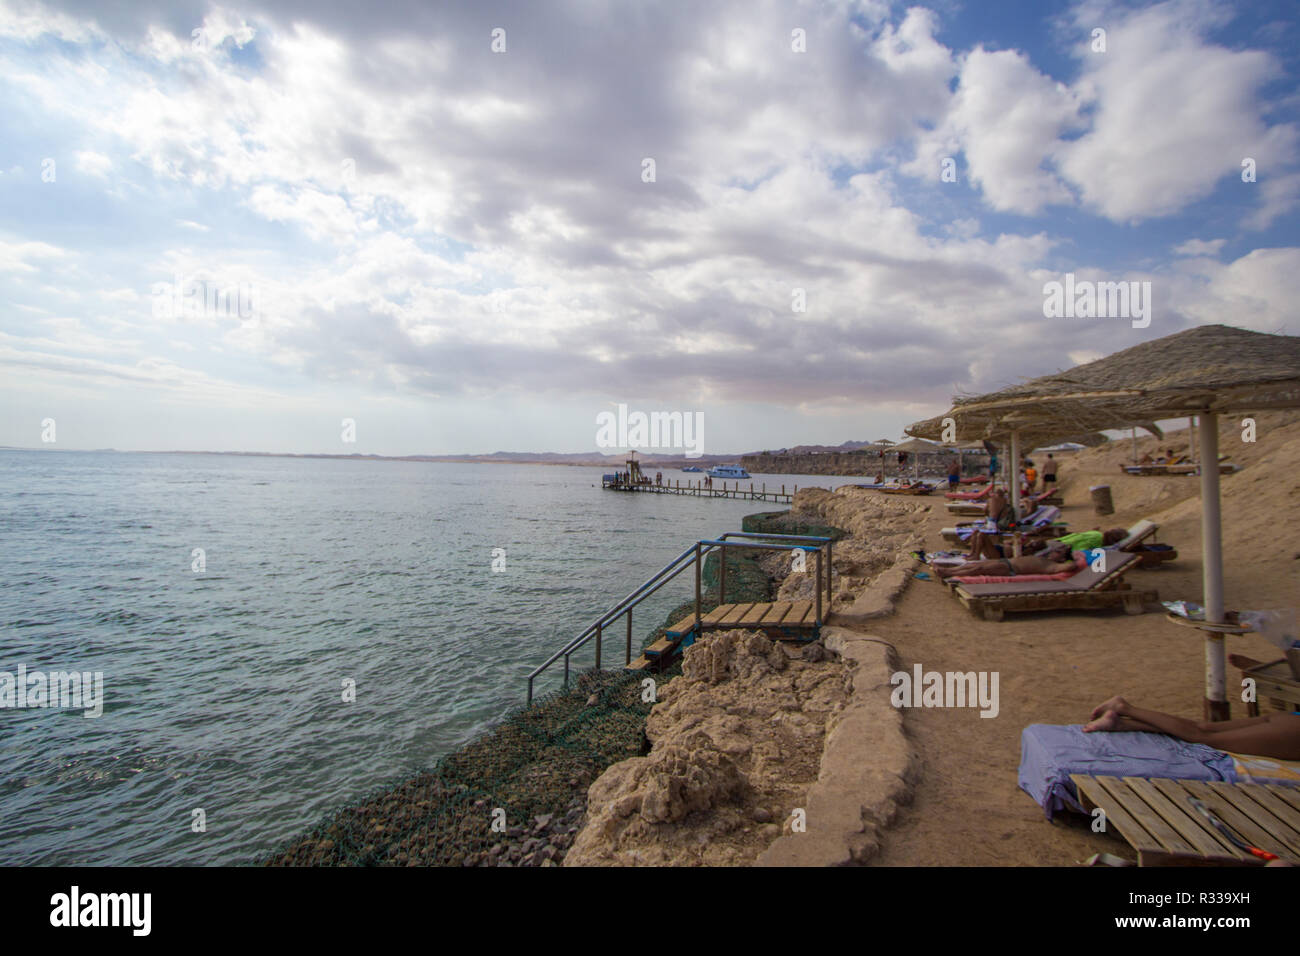 El-Shaikh Sharm, Ägypten - November 2, 2018: - Foto für die Küste des Roten Meeres in der ägyptischen Stadt Scharm el-Scheich, die Wasser zeigen und einige Felsen und Stockfoto